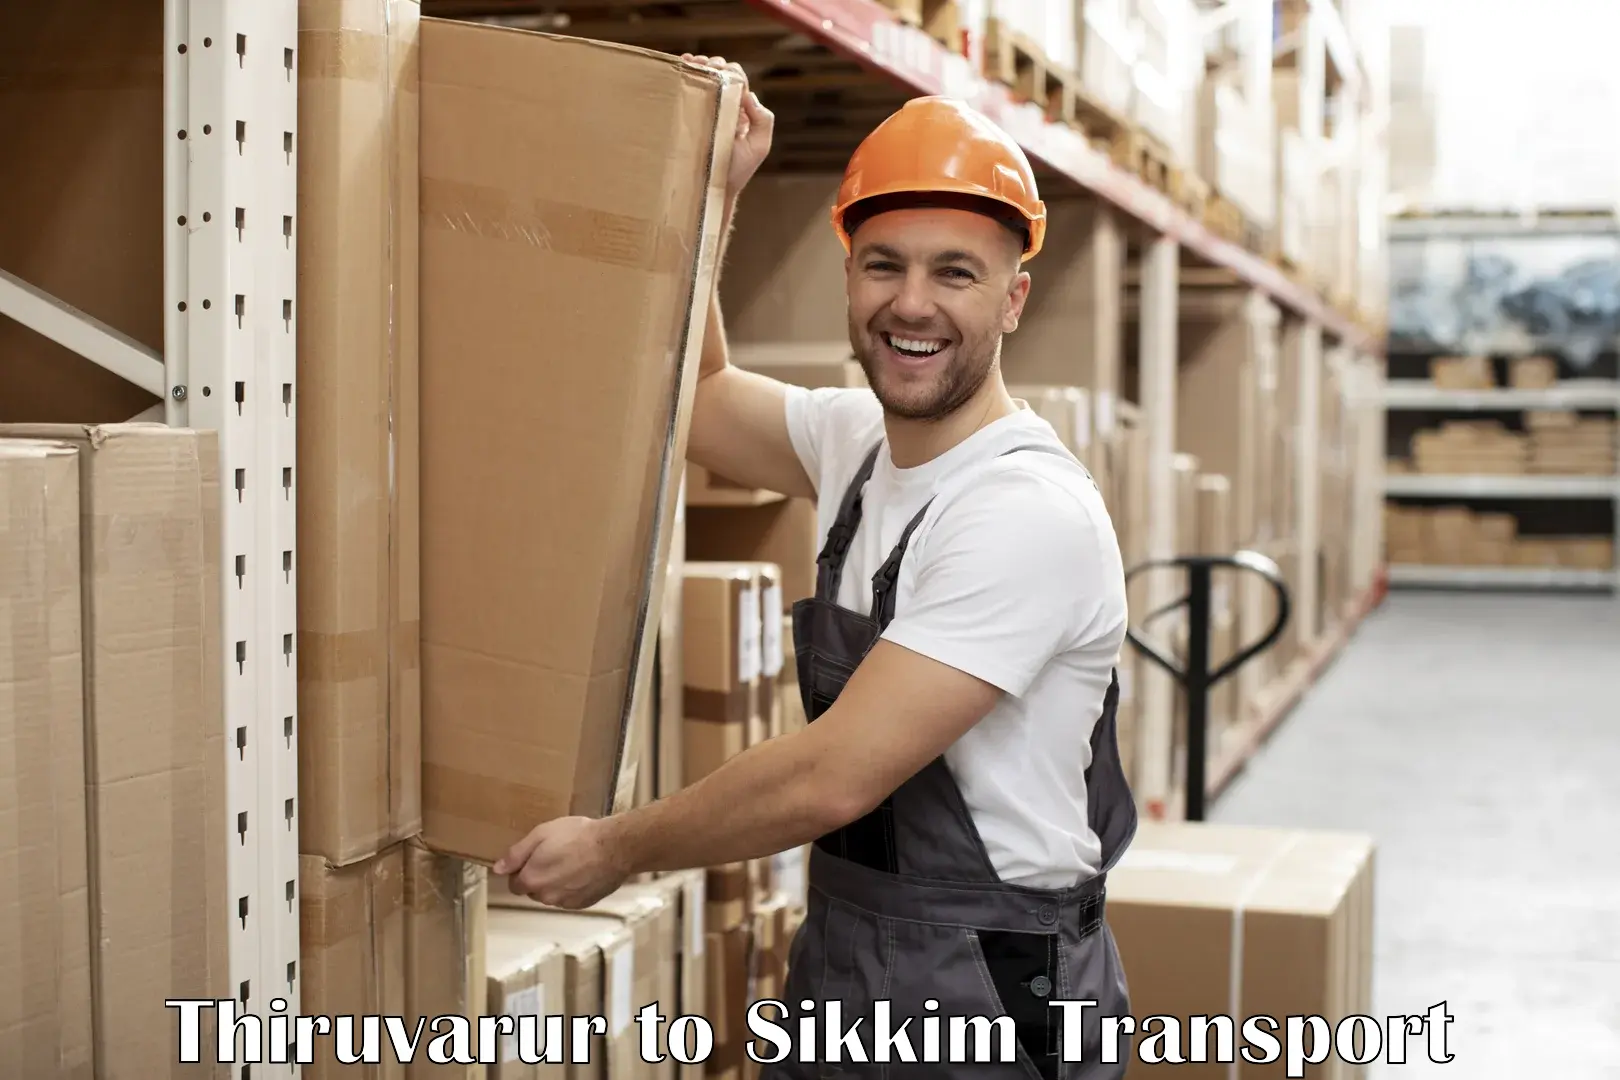 Daily transport service Thiruvarur to South Sikkim